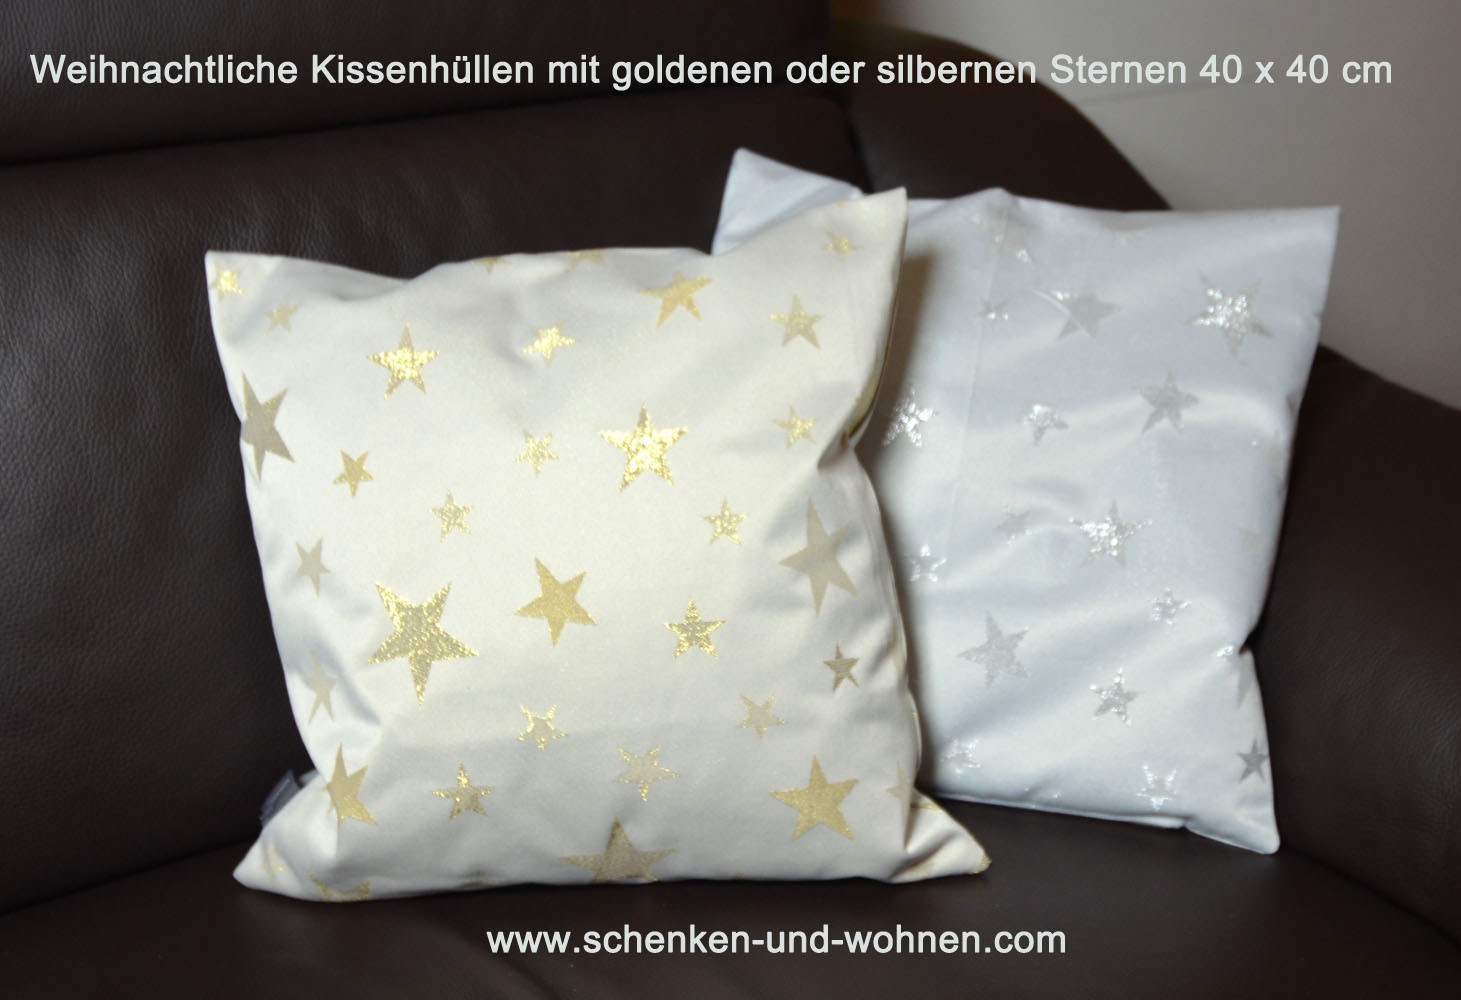 Kissenhülle 40 x 40 cm mit silbernen Sternen